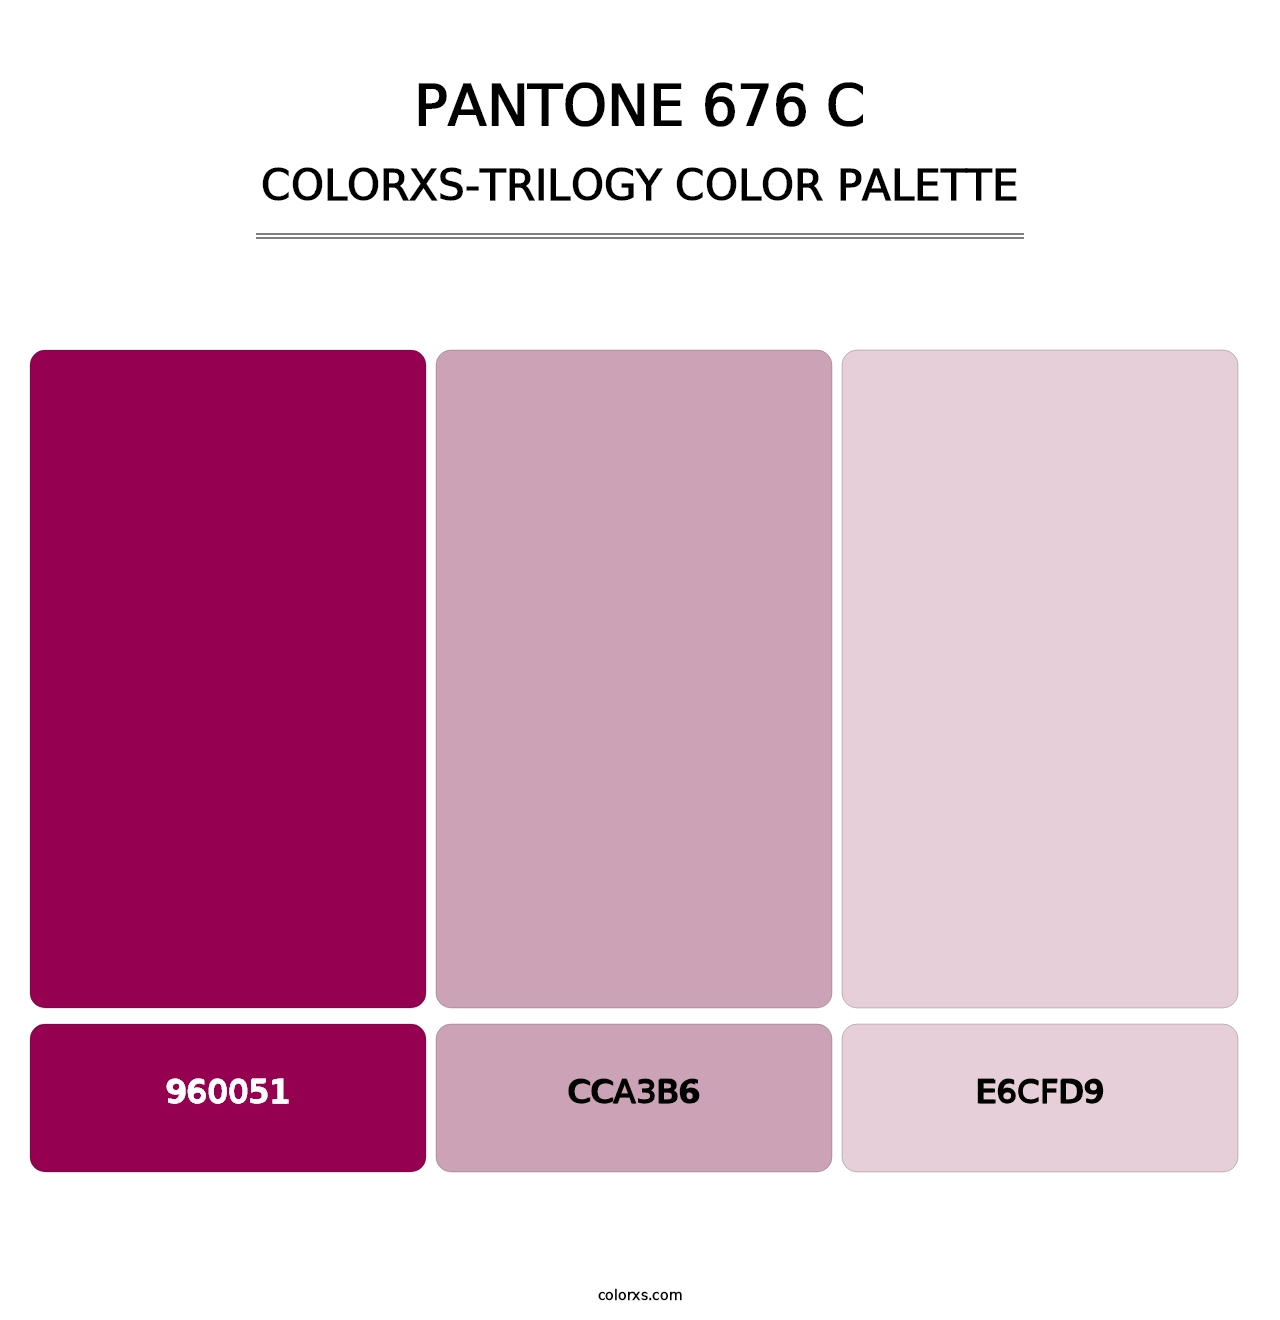 PANTONE 676 C - Colorxs Trilogy Palette